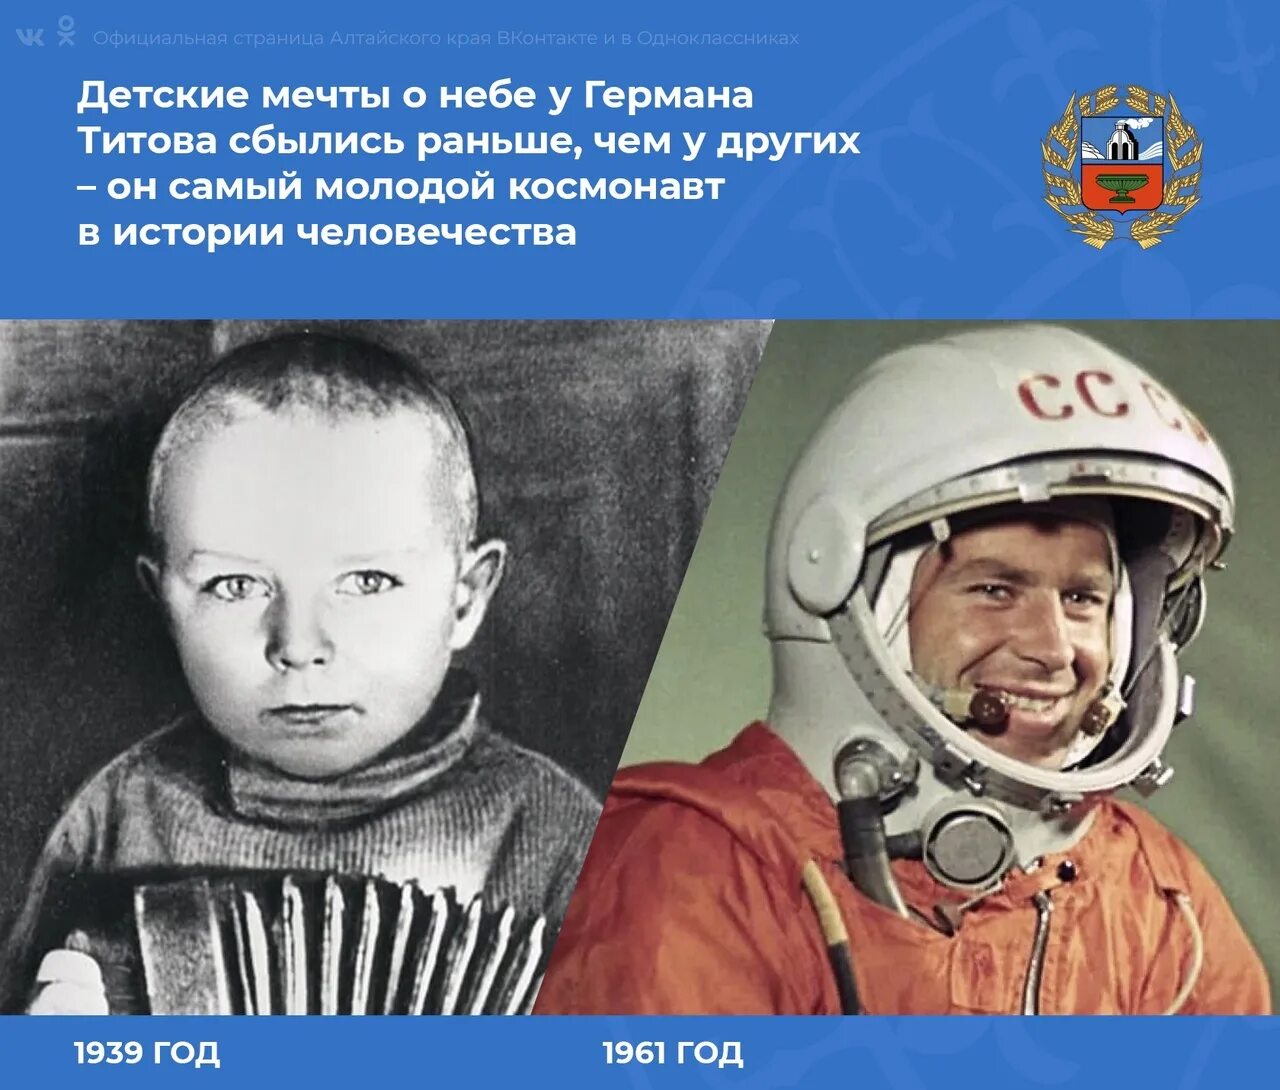 Первые полеты космонавтов в ссср. Полет в космос Германа Титова 1961 г.